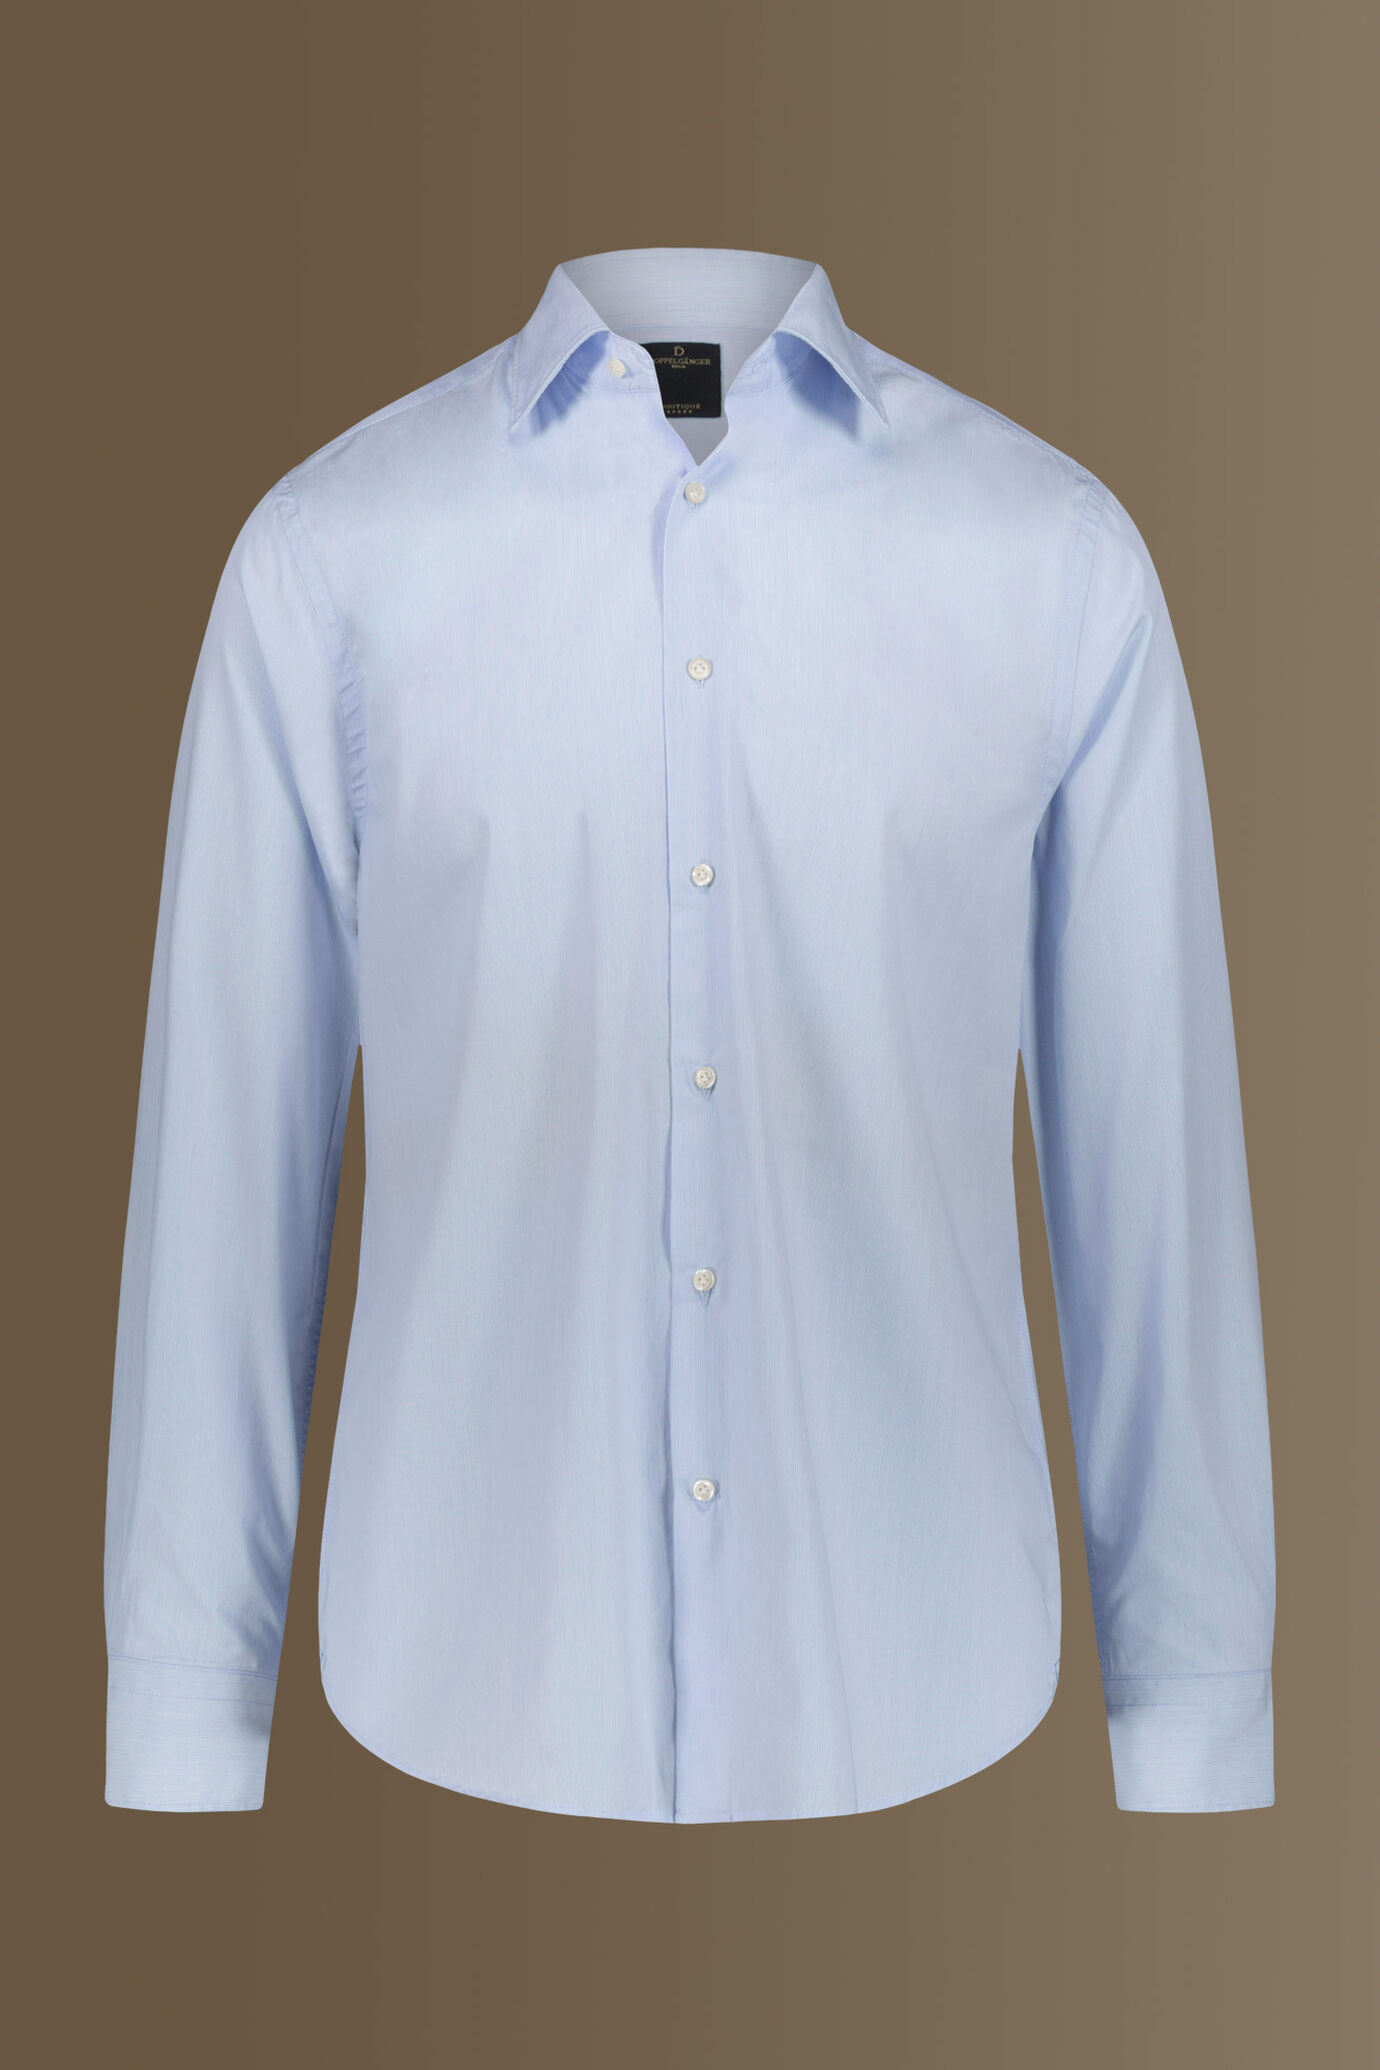 Camicia classica lavata uomo collo francese tinto filo popeline riga sottile image number 3